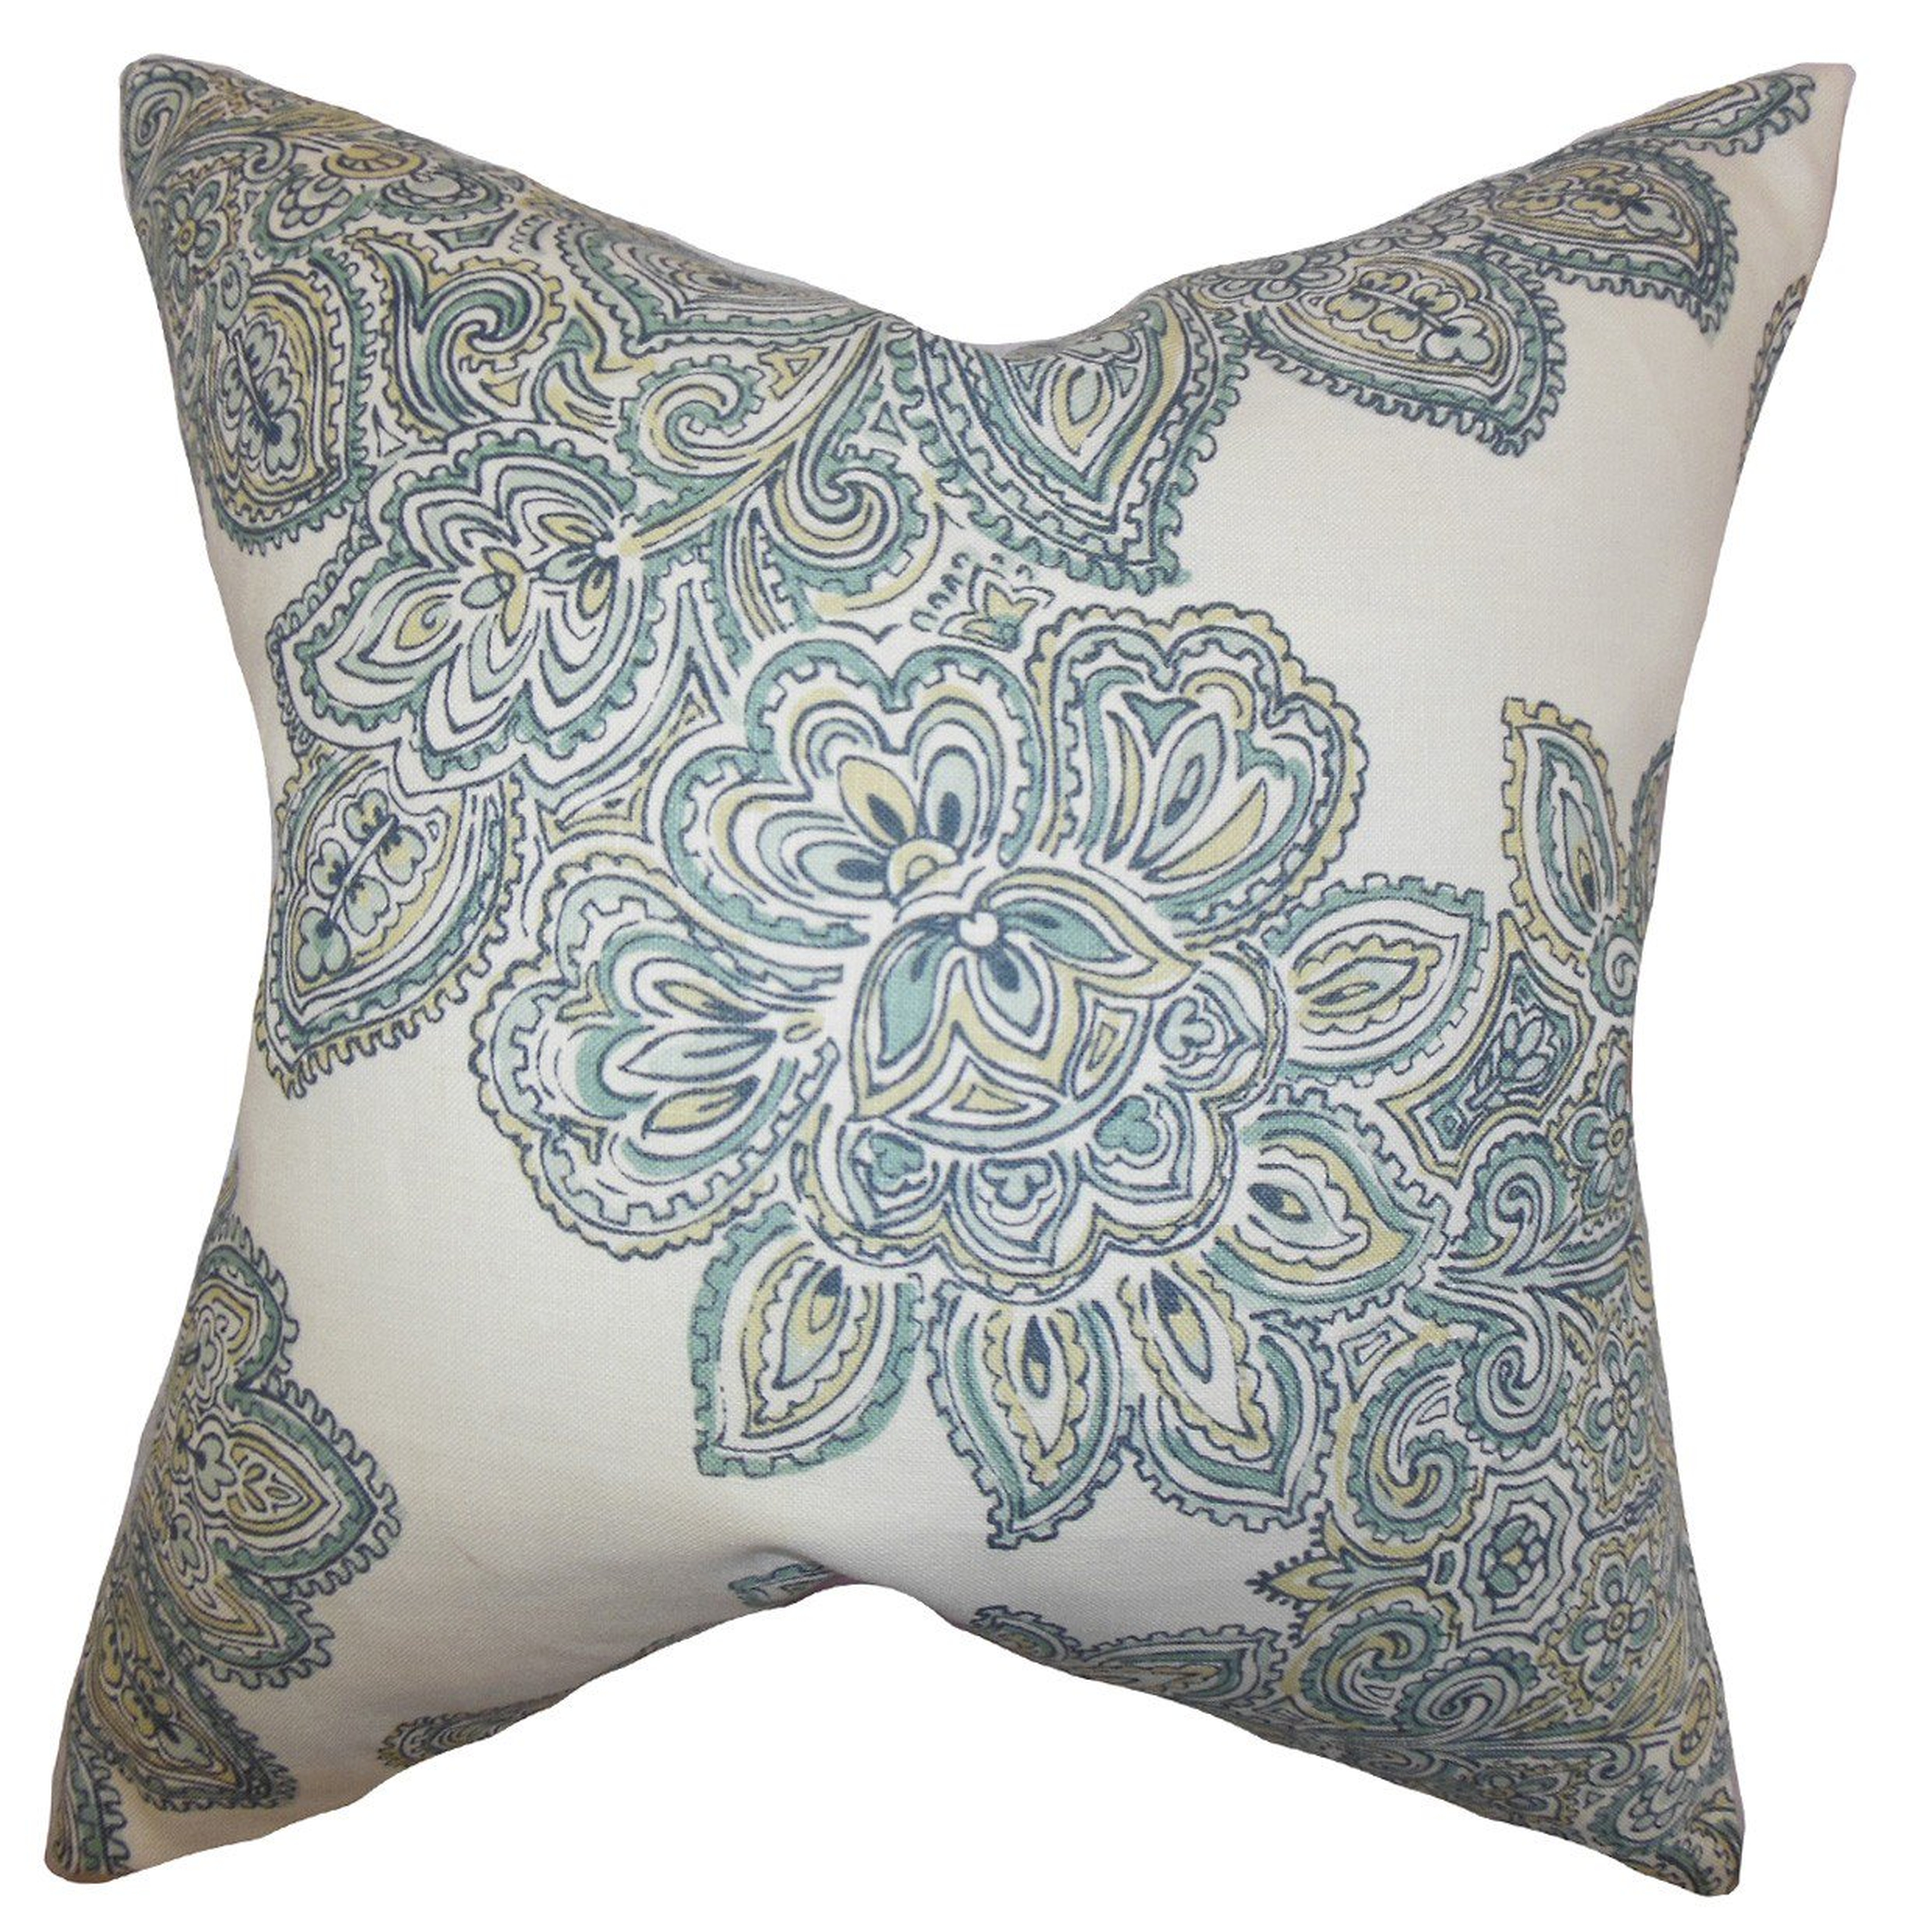 Haldis Floral Pillow Sea Green- 18" x 18" - Poly insert - Linen & Seam